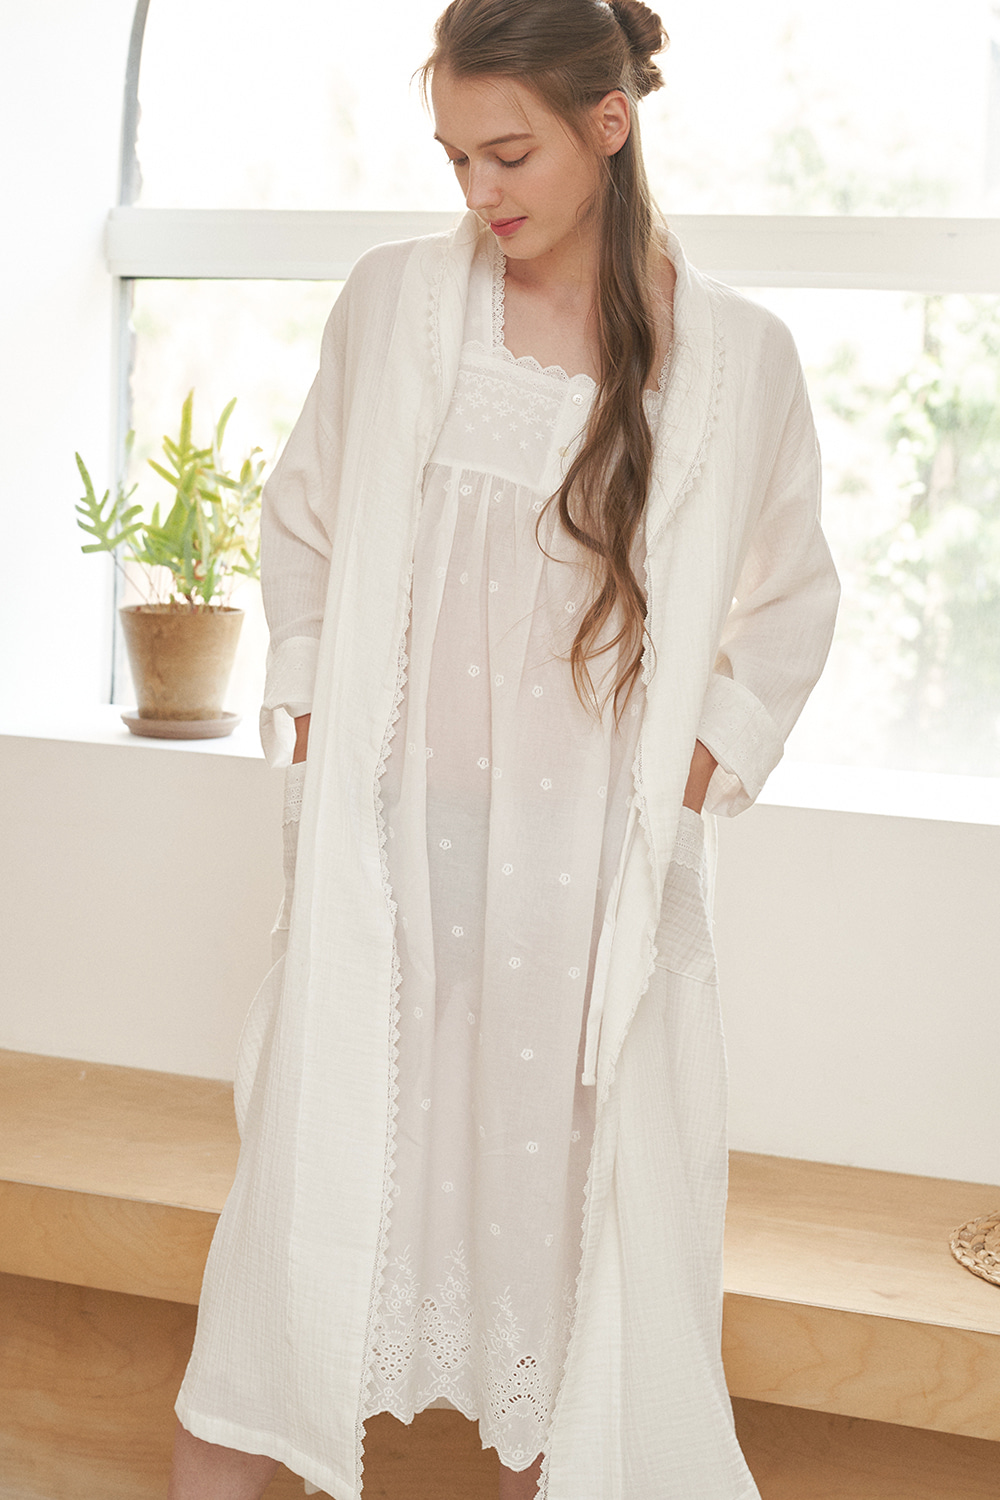 하얀나라로브잠옷, 홈웨어, 아동내복, 아동속옷,성인잠옷,고후나비